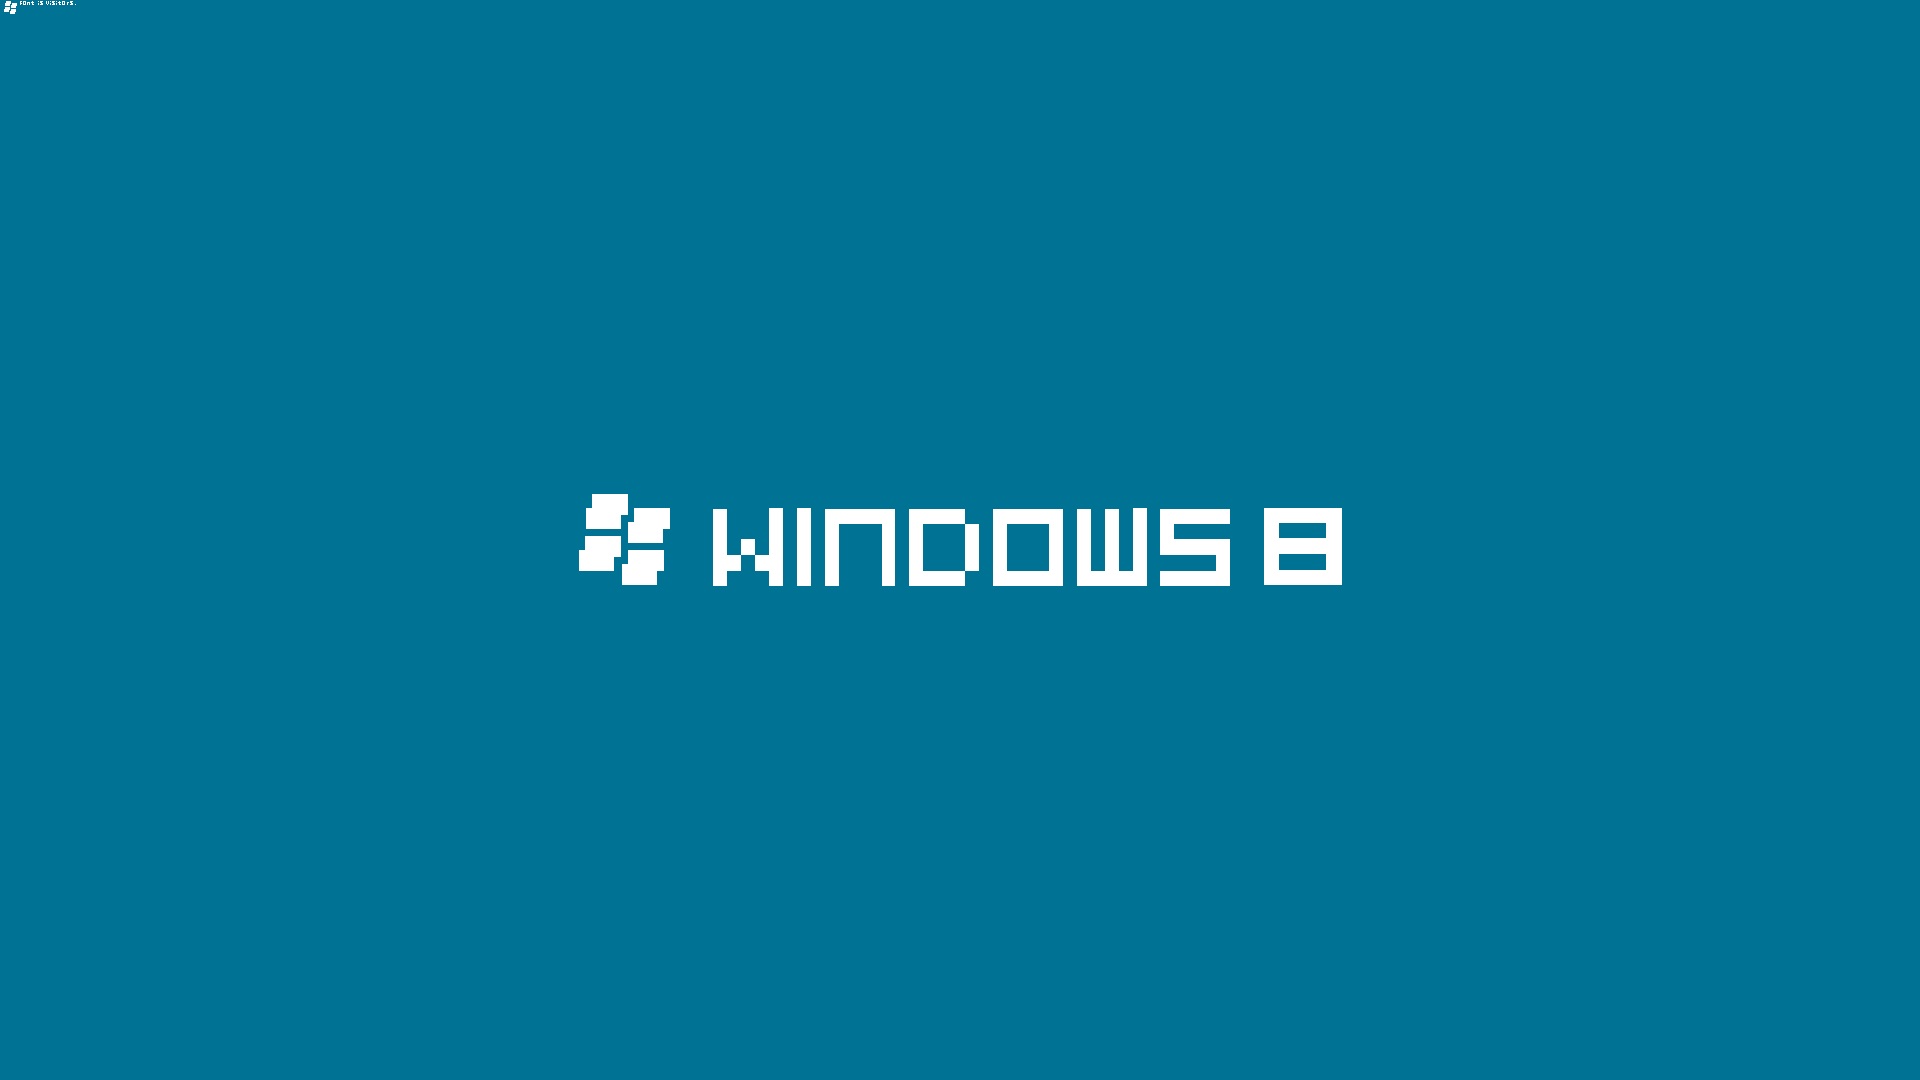 windows 8 hd wallpapers download Windows 8 bit desktop wallpapers